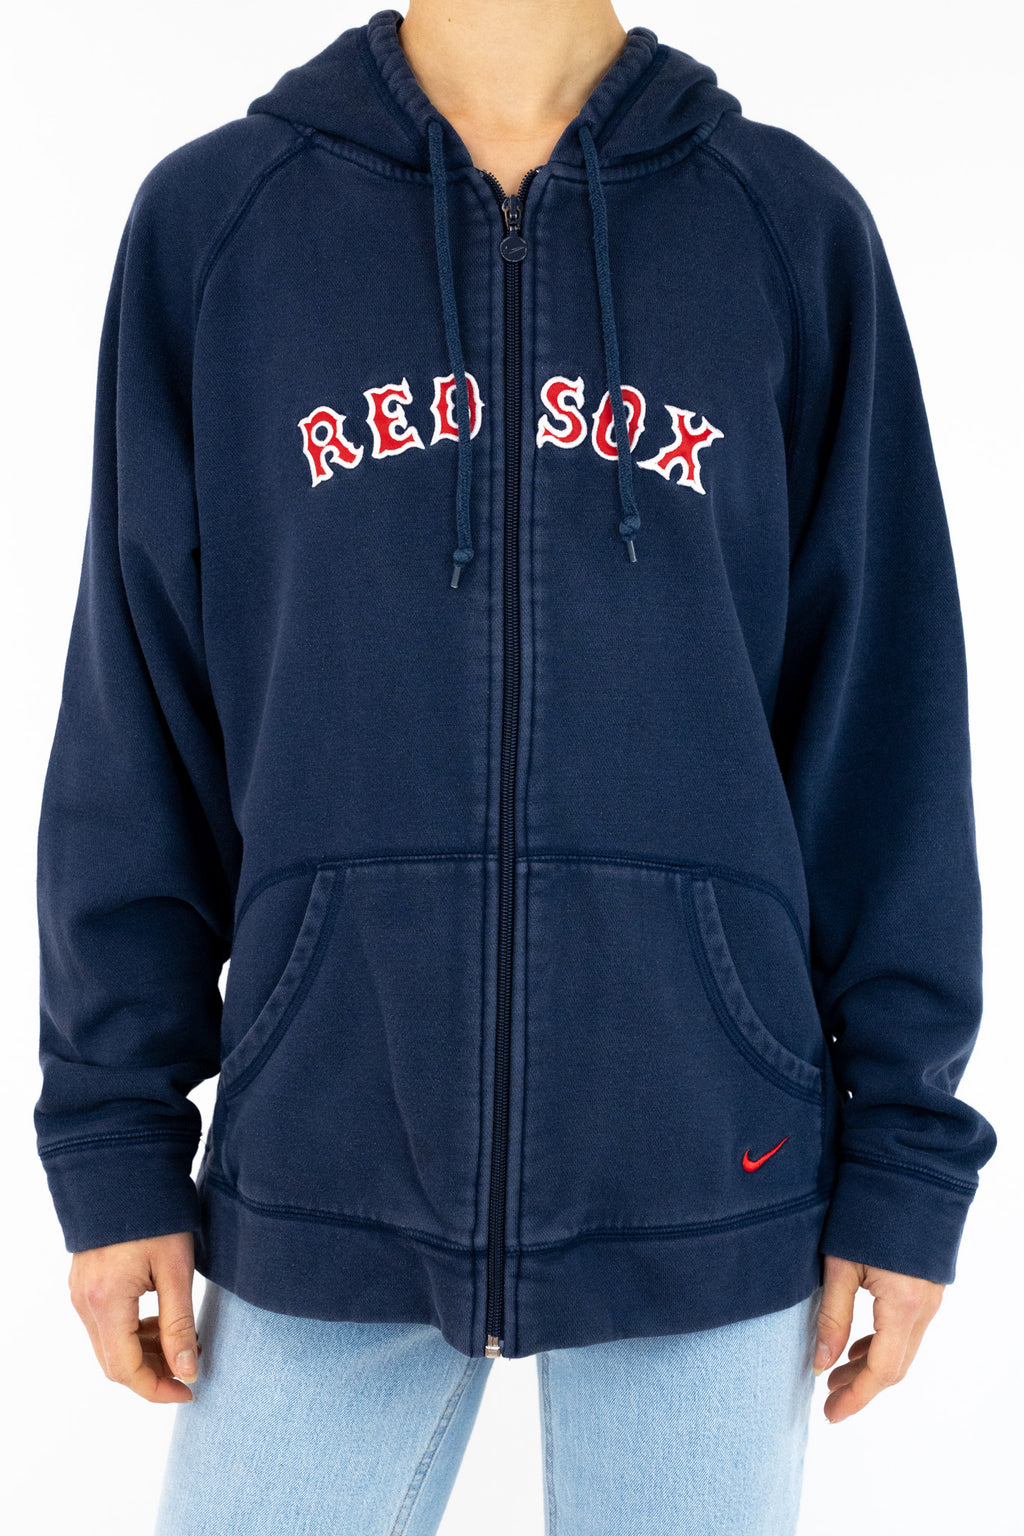 Red Sox Navy Sweatshirt – Vintage Fabrik